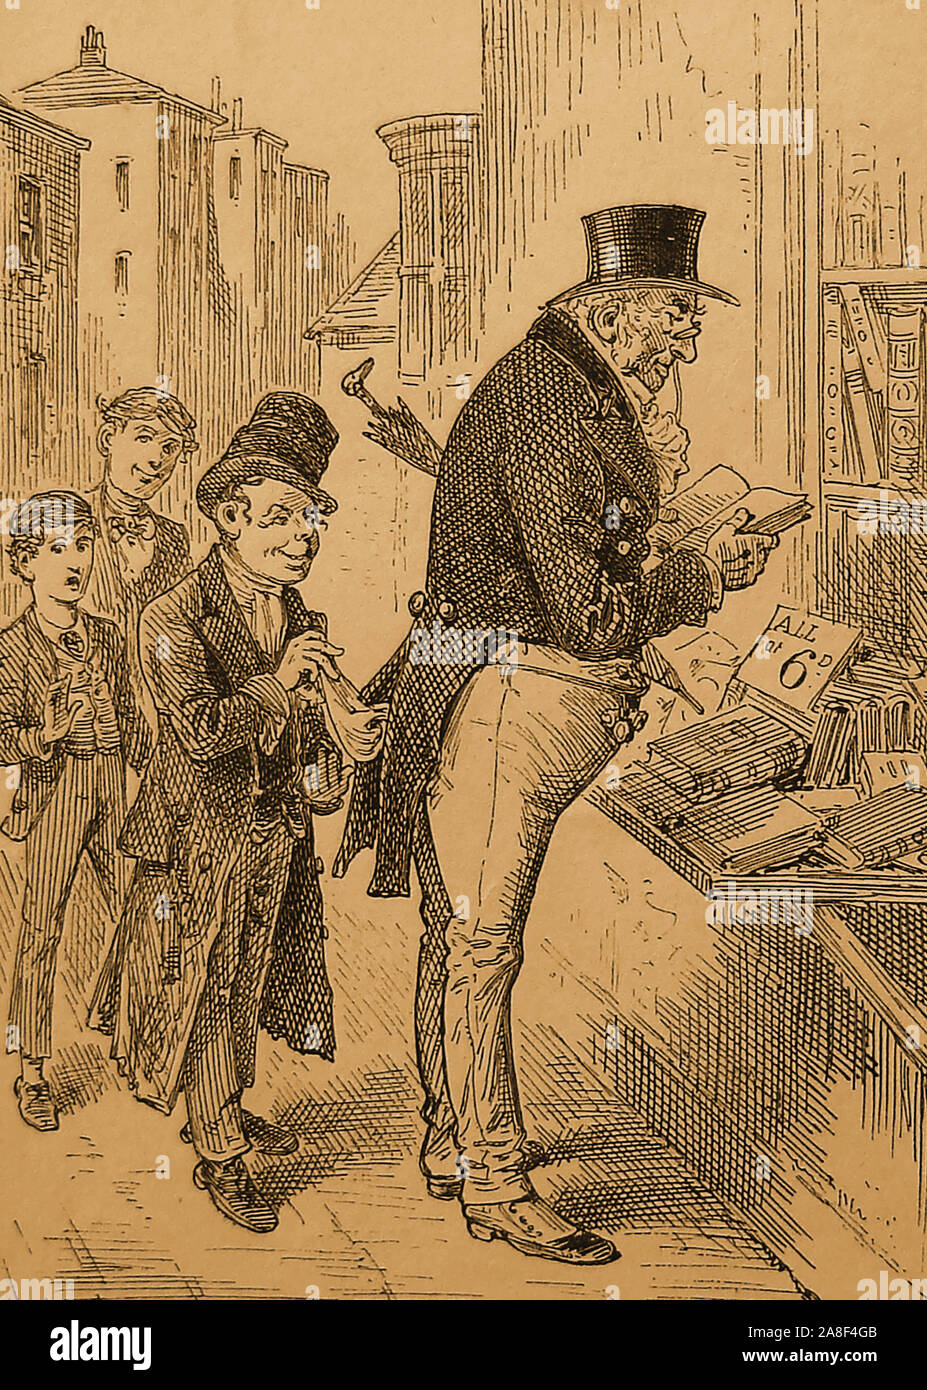 1885 Illustrazione - Oliver Twist la storia di un orfano Oliver Twist, che viene venduto in apprendistato con un impresario. Dopo la fuga egli si reca a Londra dove incontra il 'evasore Artful', un membro di una gang di novellame di borseggiatori guidato da un anziano rogue Fagin.Oliver Twist è scioccata quando l'evasore Artful ruba il signor Brownlow il fazzoletto all'edicola.(Charles Dickens) Foto Stock